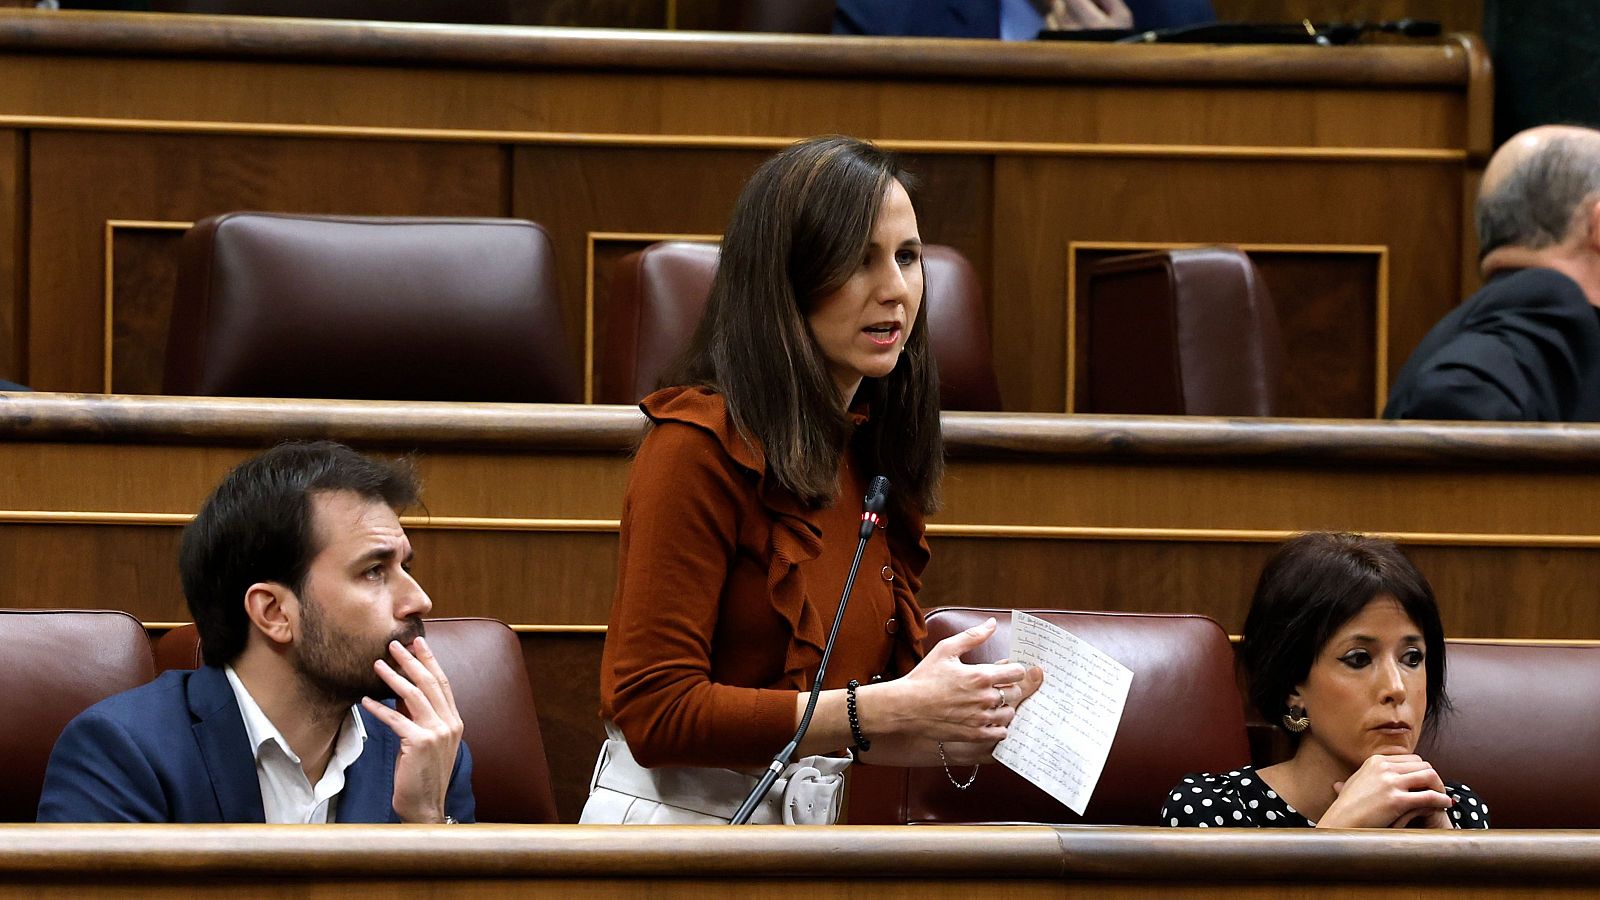 La secretaria general de Podemos, Ione Belarra, en el Congreso